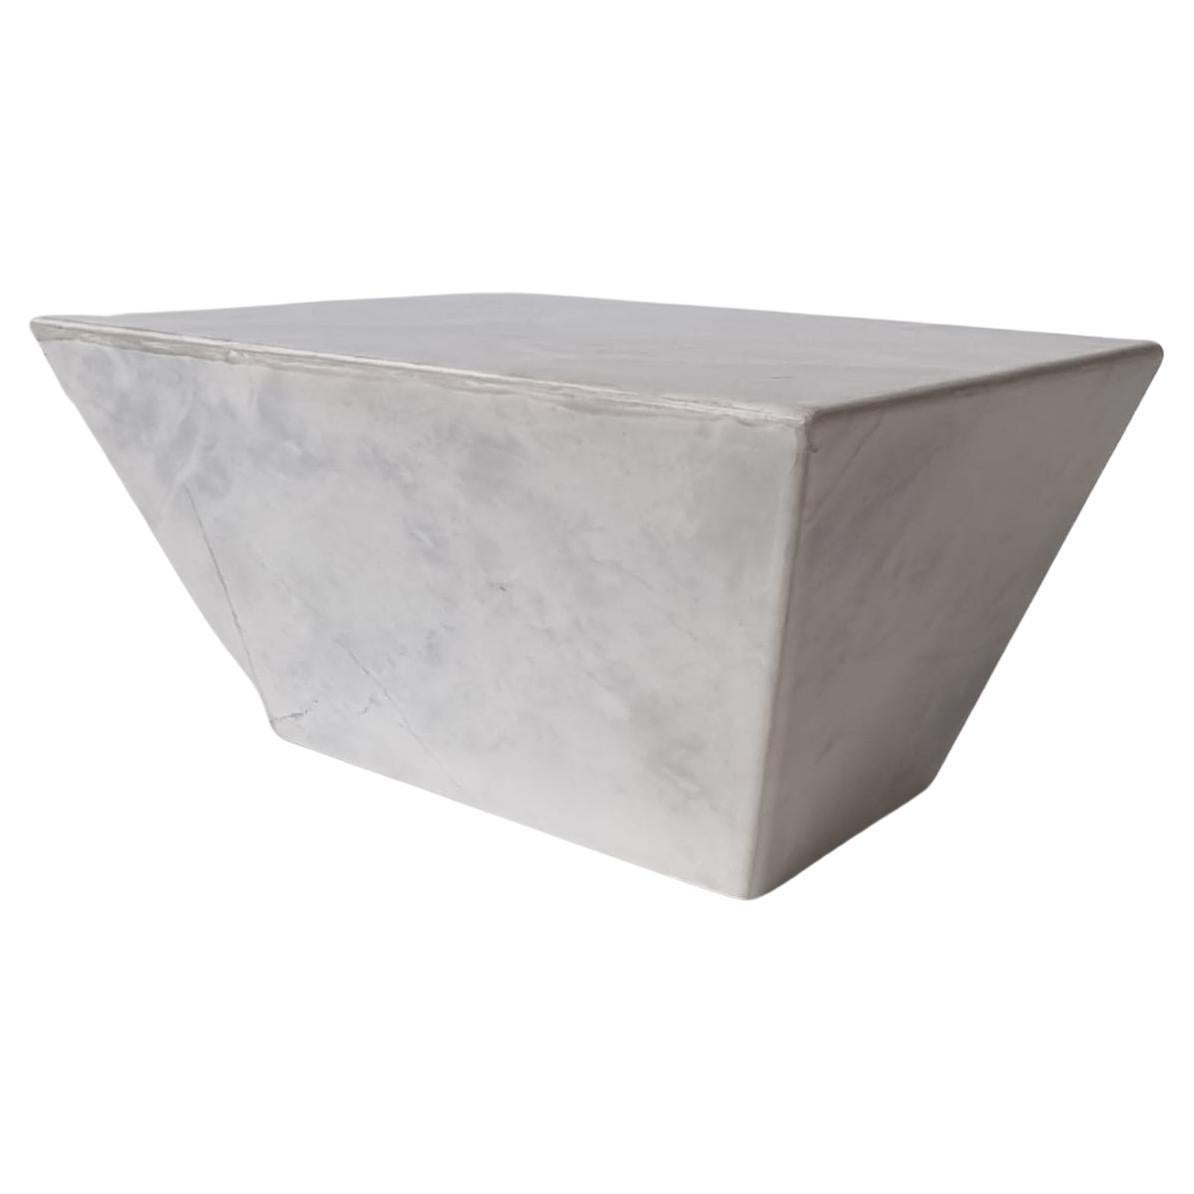 Wir stellen Ihnen unser exquisites Carrara-Marmor-Tischset vor, ein atemberaubendes Ensemble, das zeitlose Schönheit und tadellose Handwerkskunst verkörpert. Gefertigt aus feinstem Carrara-Marmor, der für seine Eleganz und sein Prestige bekannt ist,